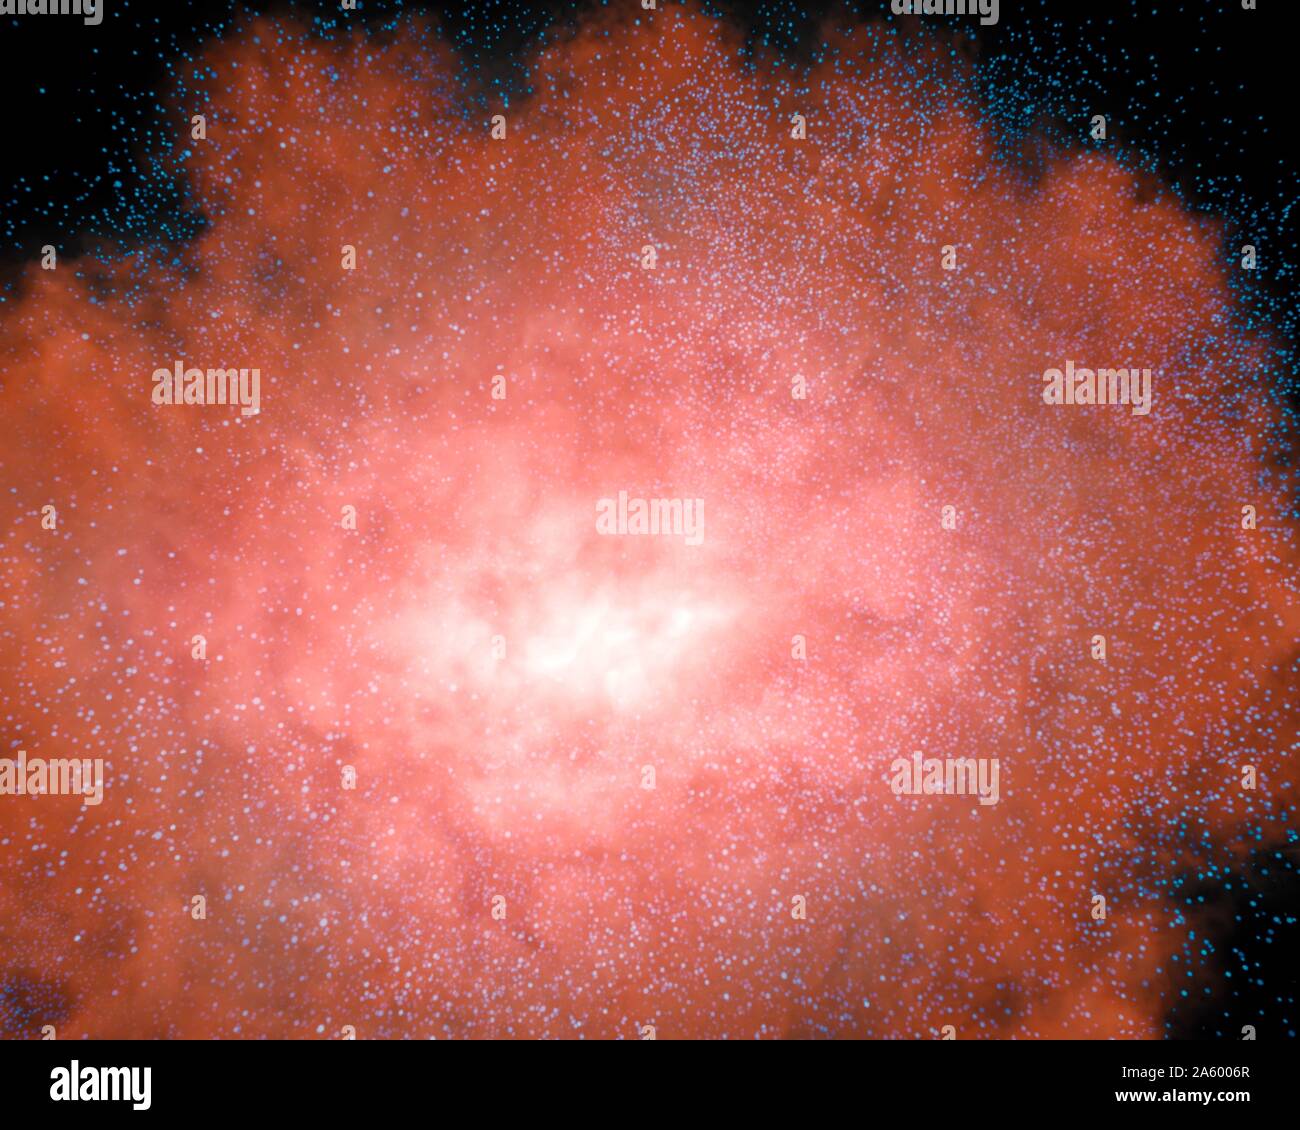 Toujours d'une animation montrant qu'une galaxie invisible enveloppé de  poussière peut devenir une évidence frappante lorsque lumineux vue en  lumière infrarouge Photo Stock - Alamy